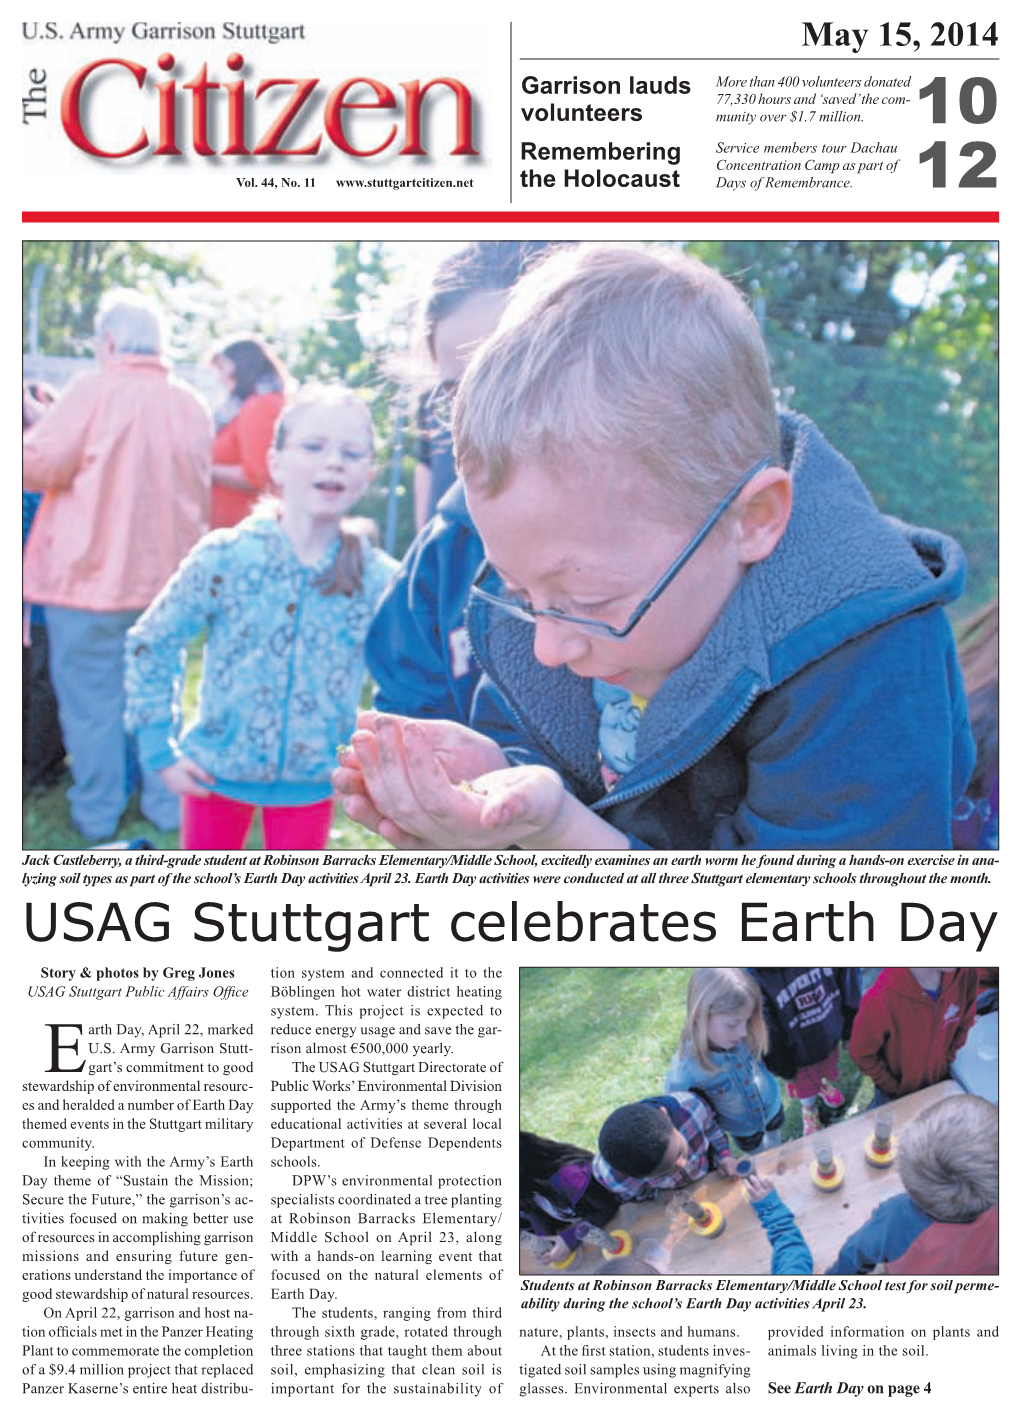 USAG Stuttgart Celebrates Earth